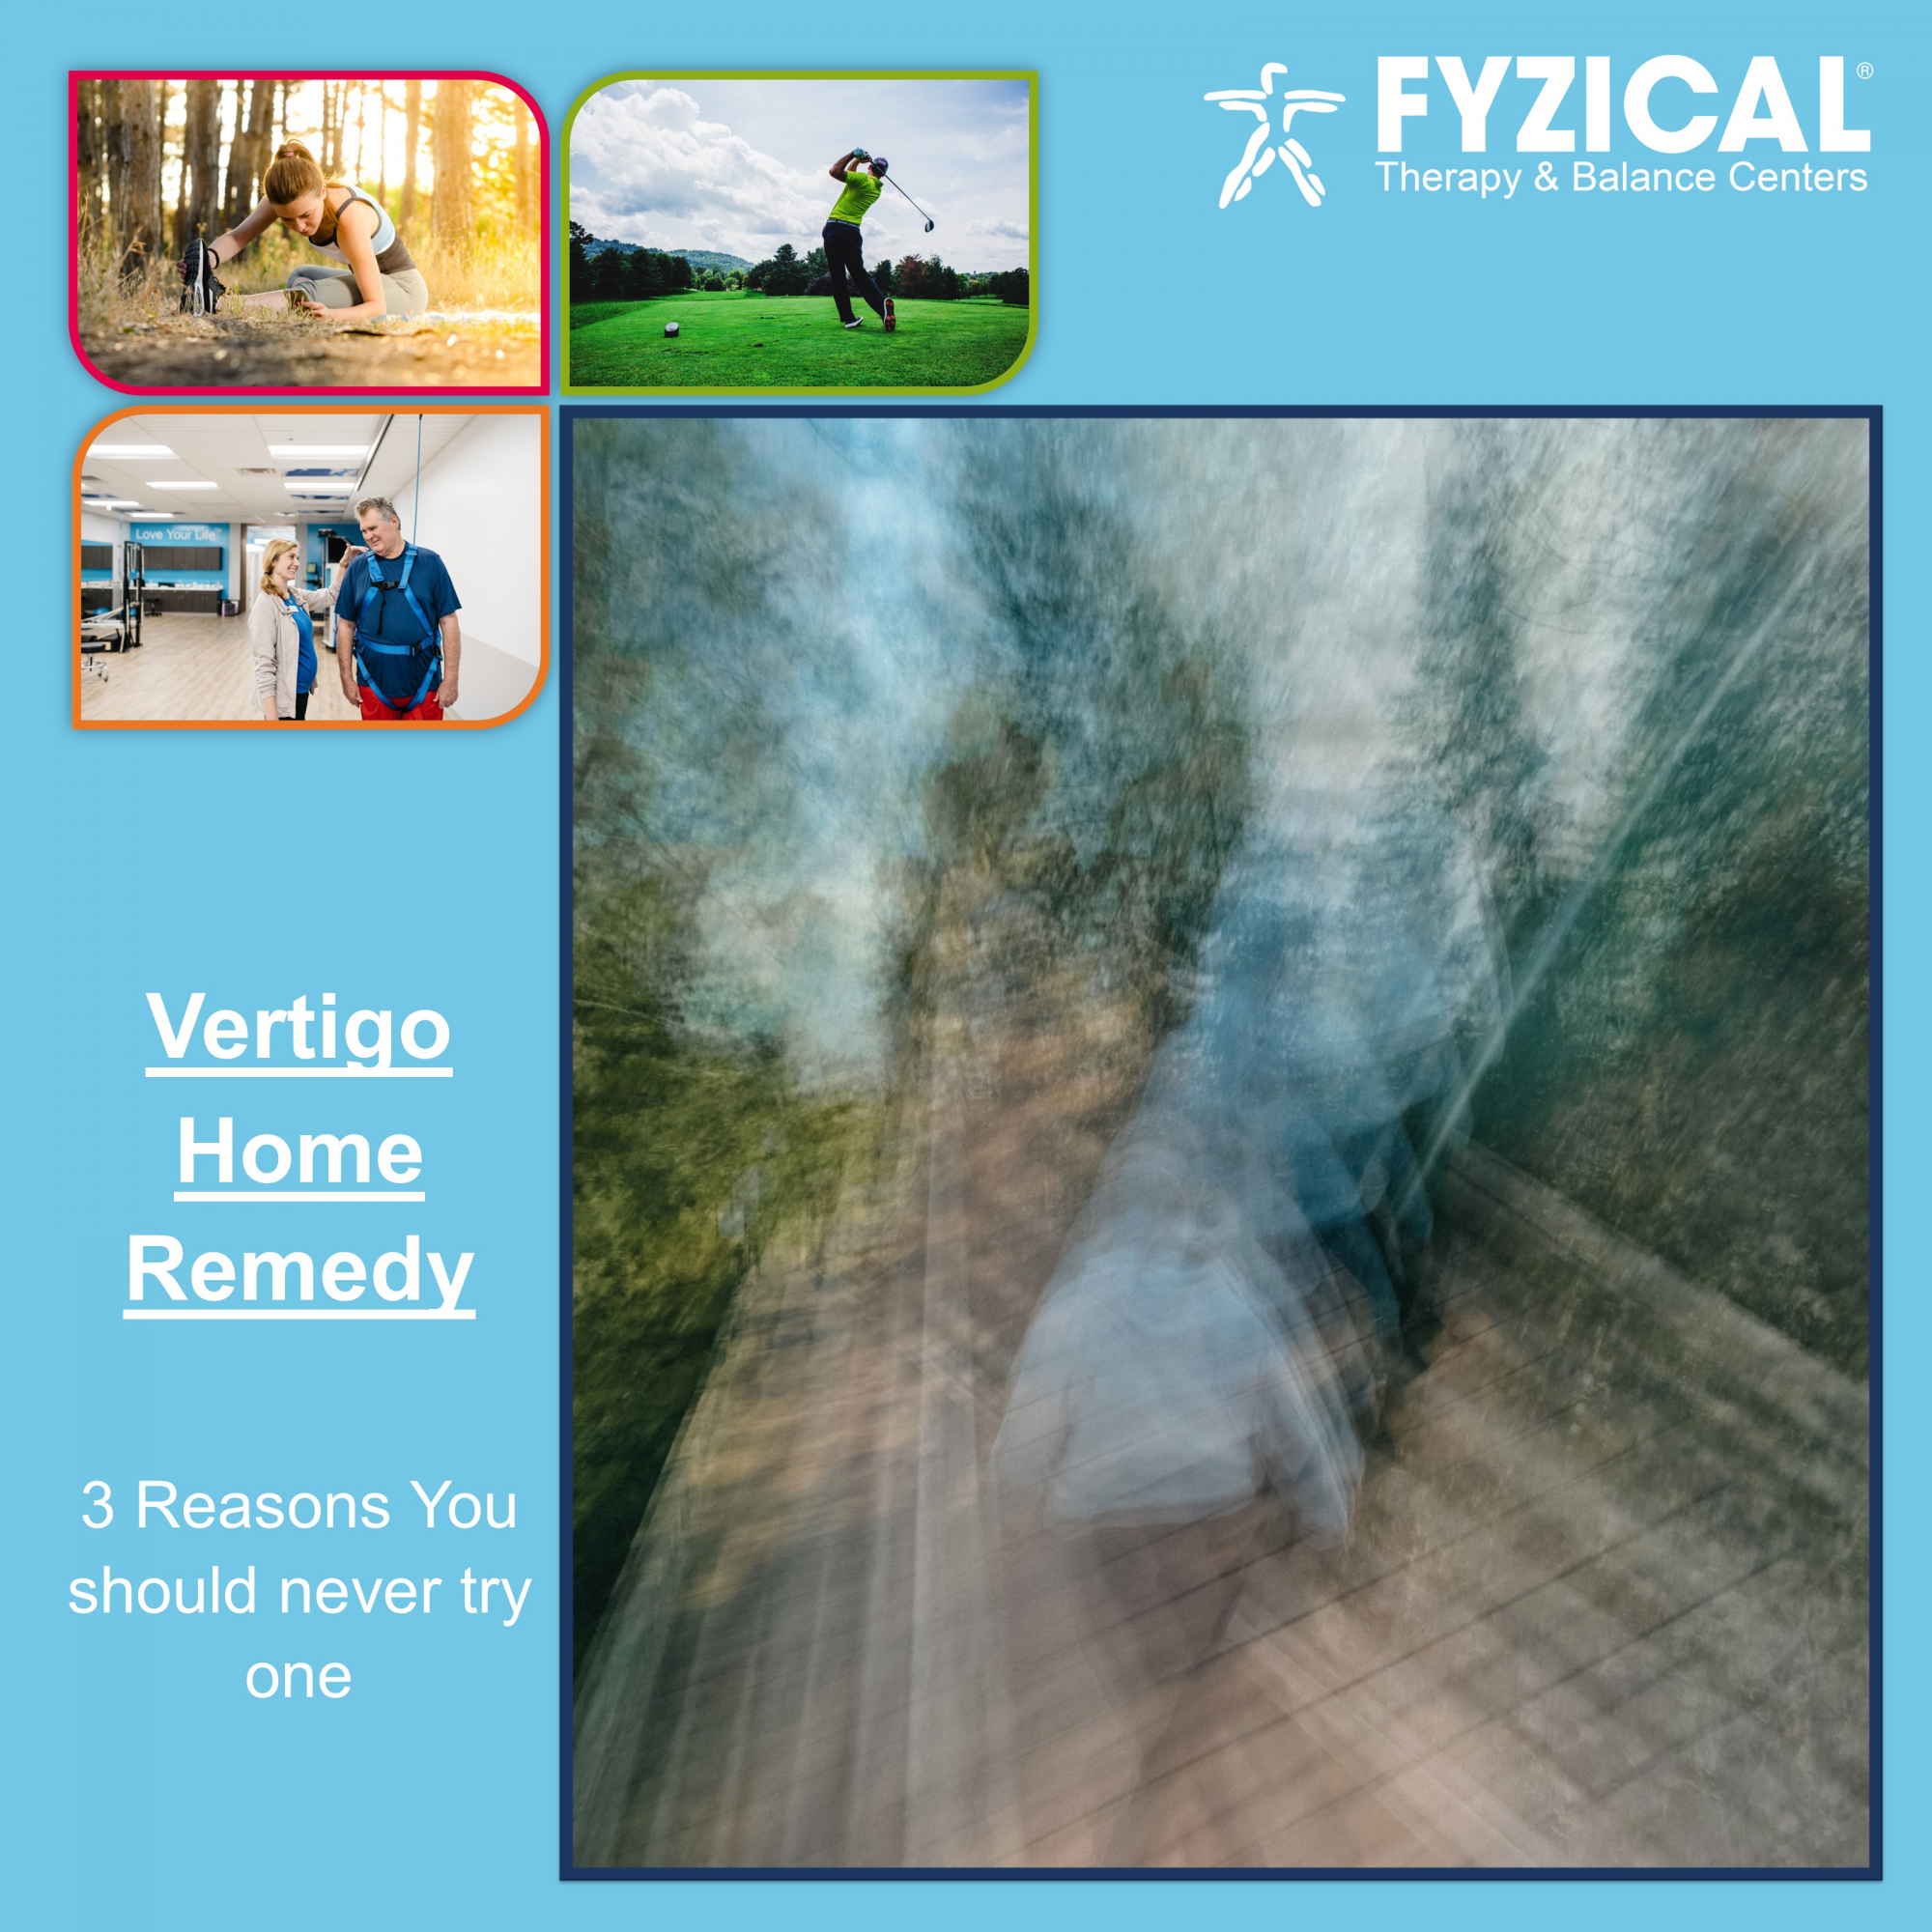 Vertigo Home Remedy... 3 Reasons you should never try one